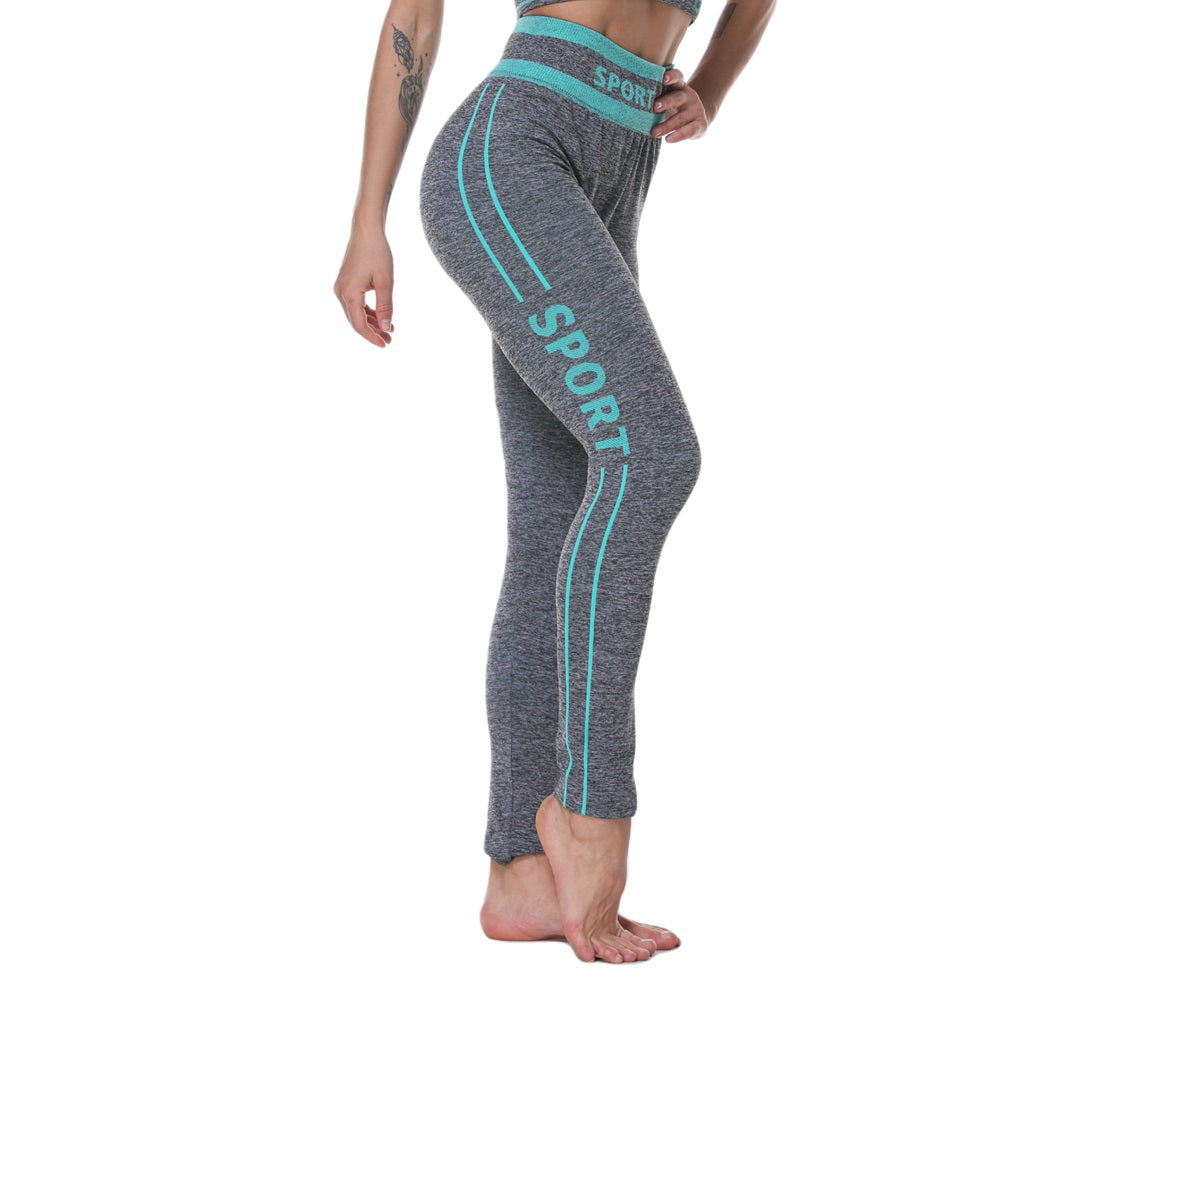 free-size-yoga-suit-rngekogreen